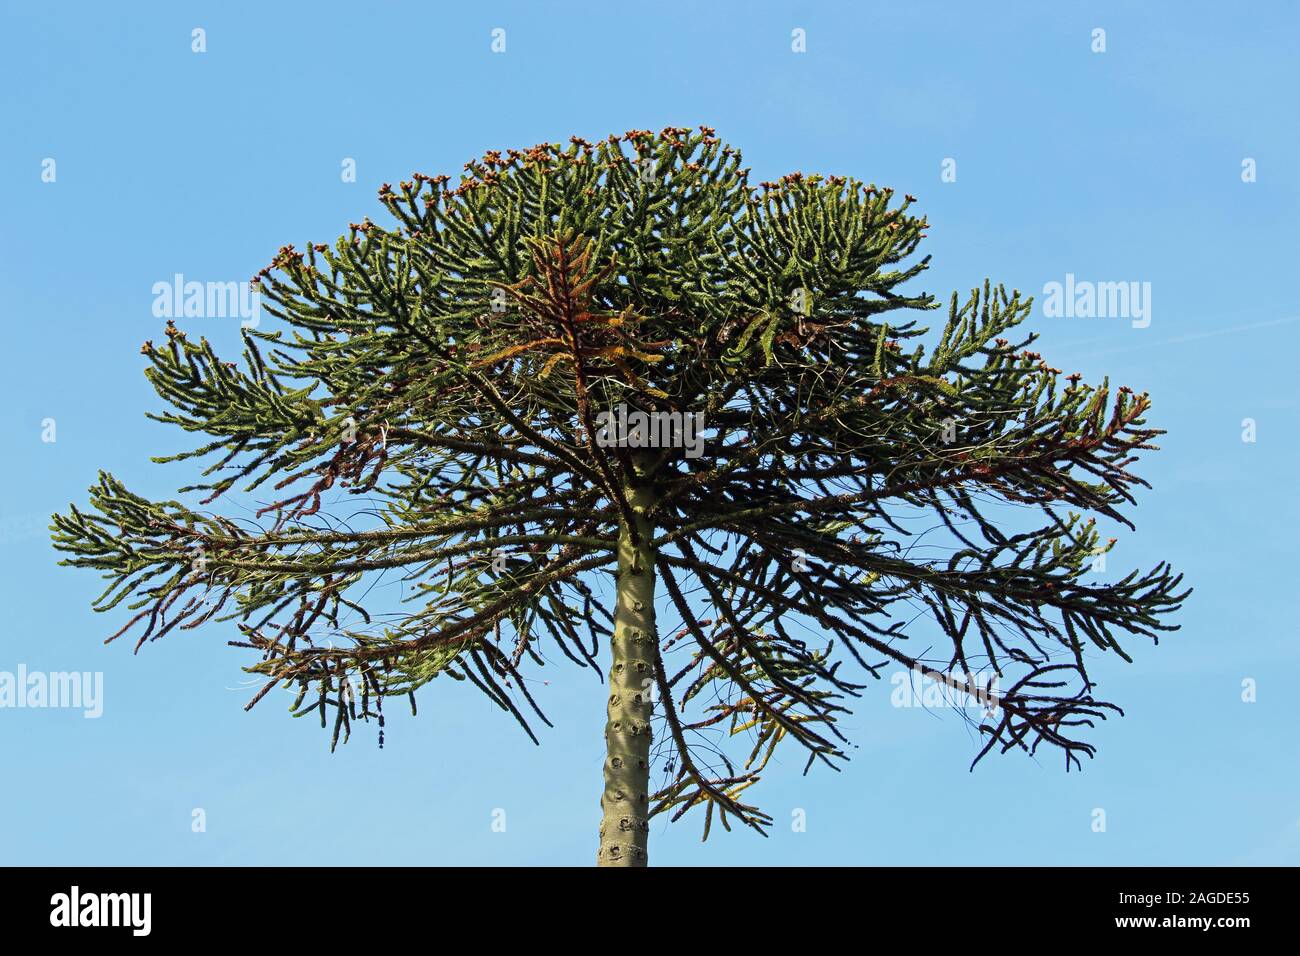 Araucaria o Pino chileno, Araucaria araucana, ramas de árboles con un fondo de cielo azul. Foto de stock